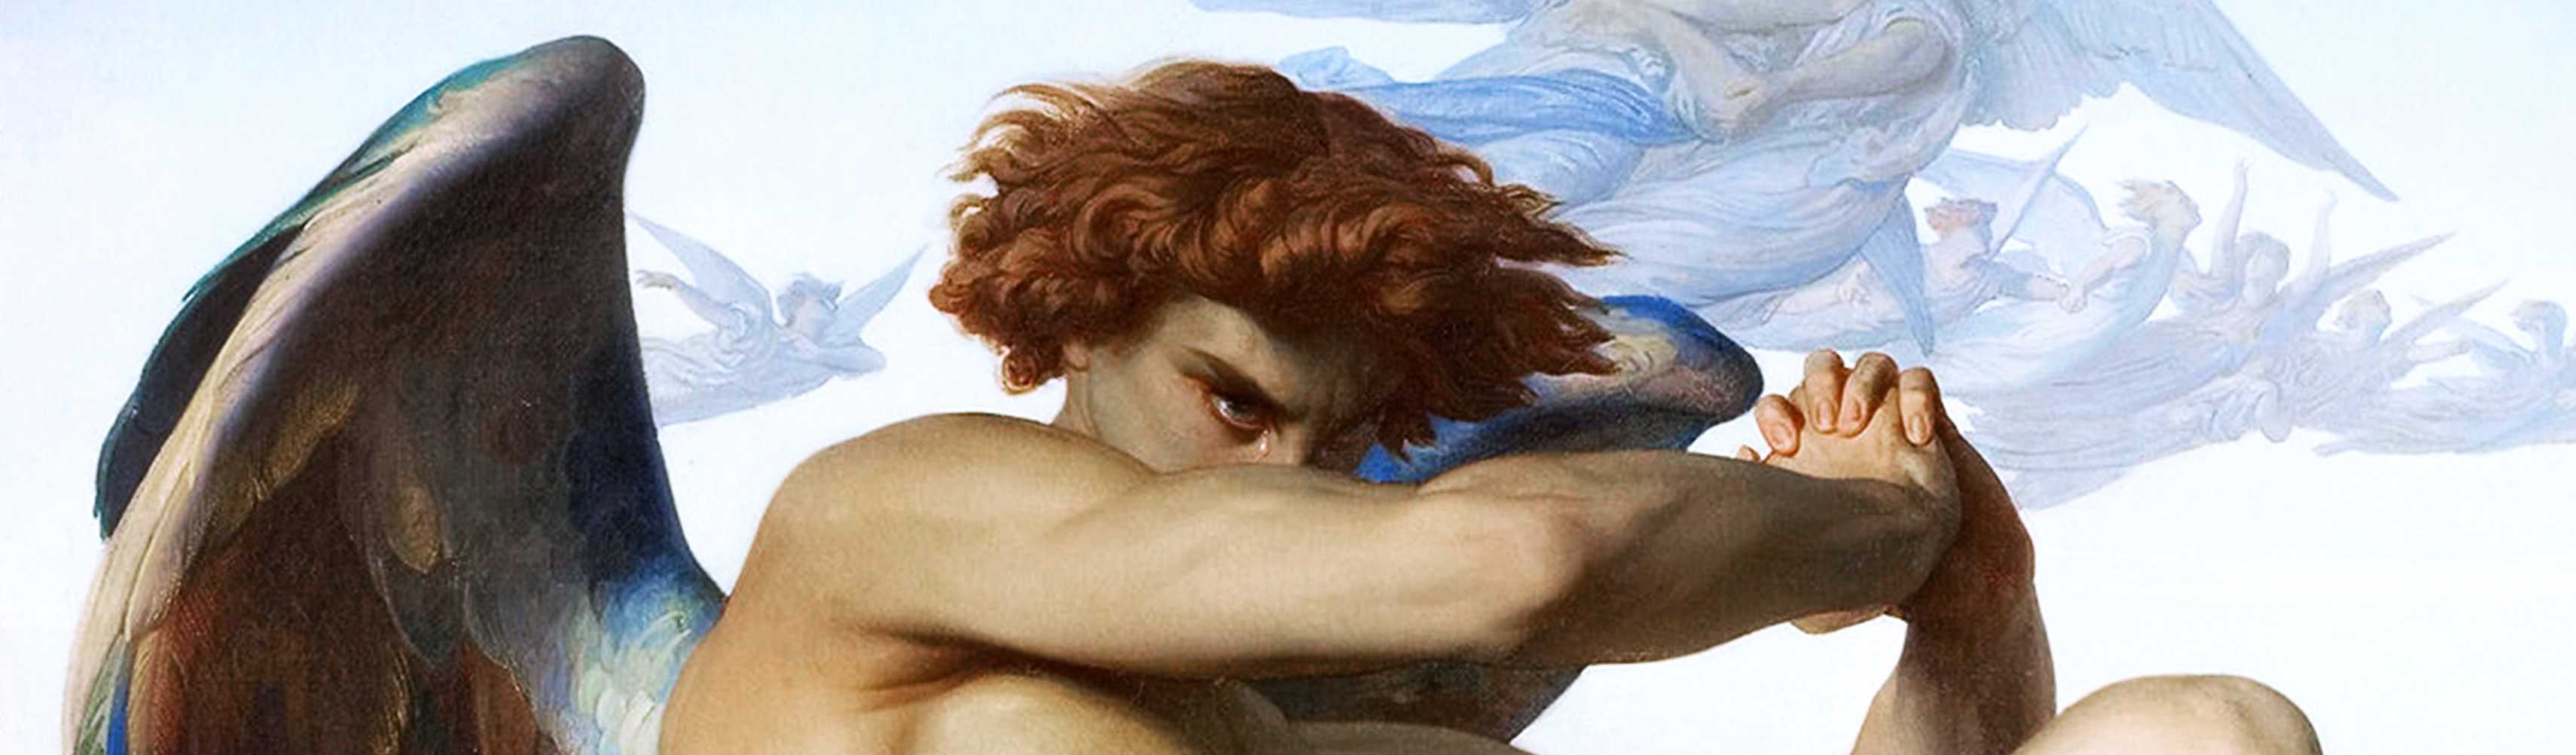 Ángel caído, por Alexandre Cabanel (1847) (1,06 MB) (f)